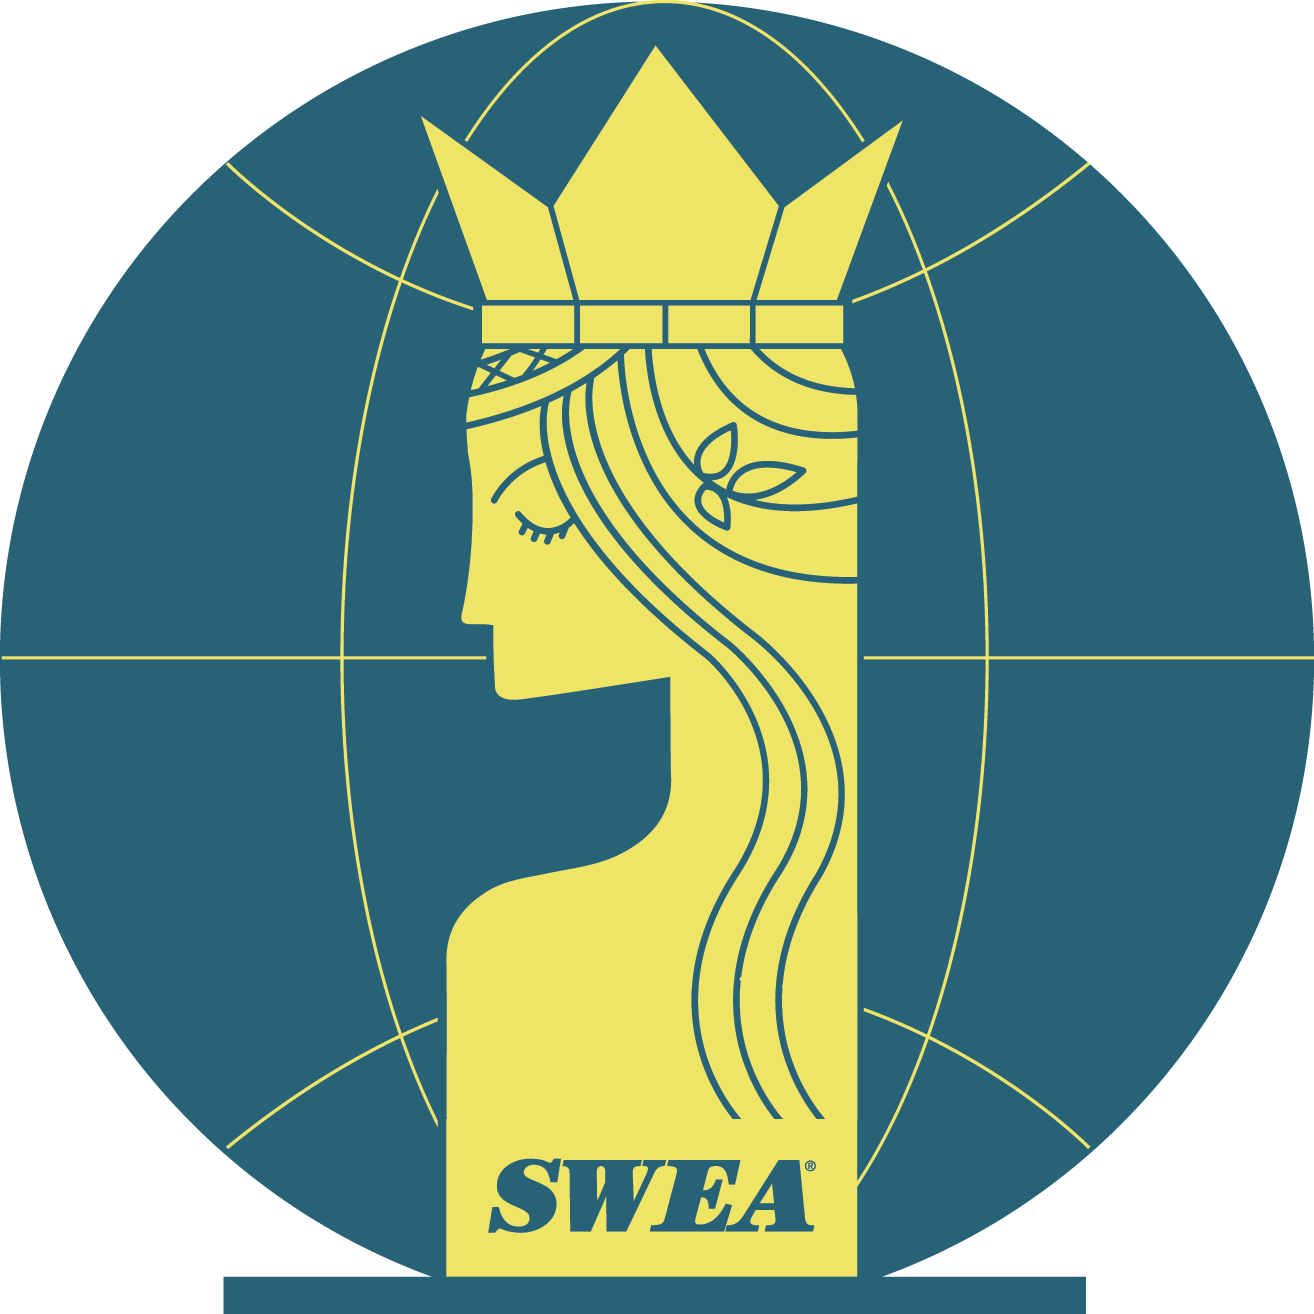 Swedish Organizations in Miami Florida - Swedish Women’s Educational Association Florida